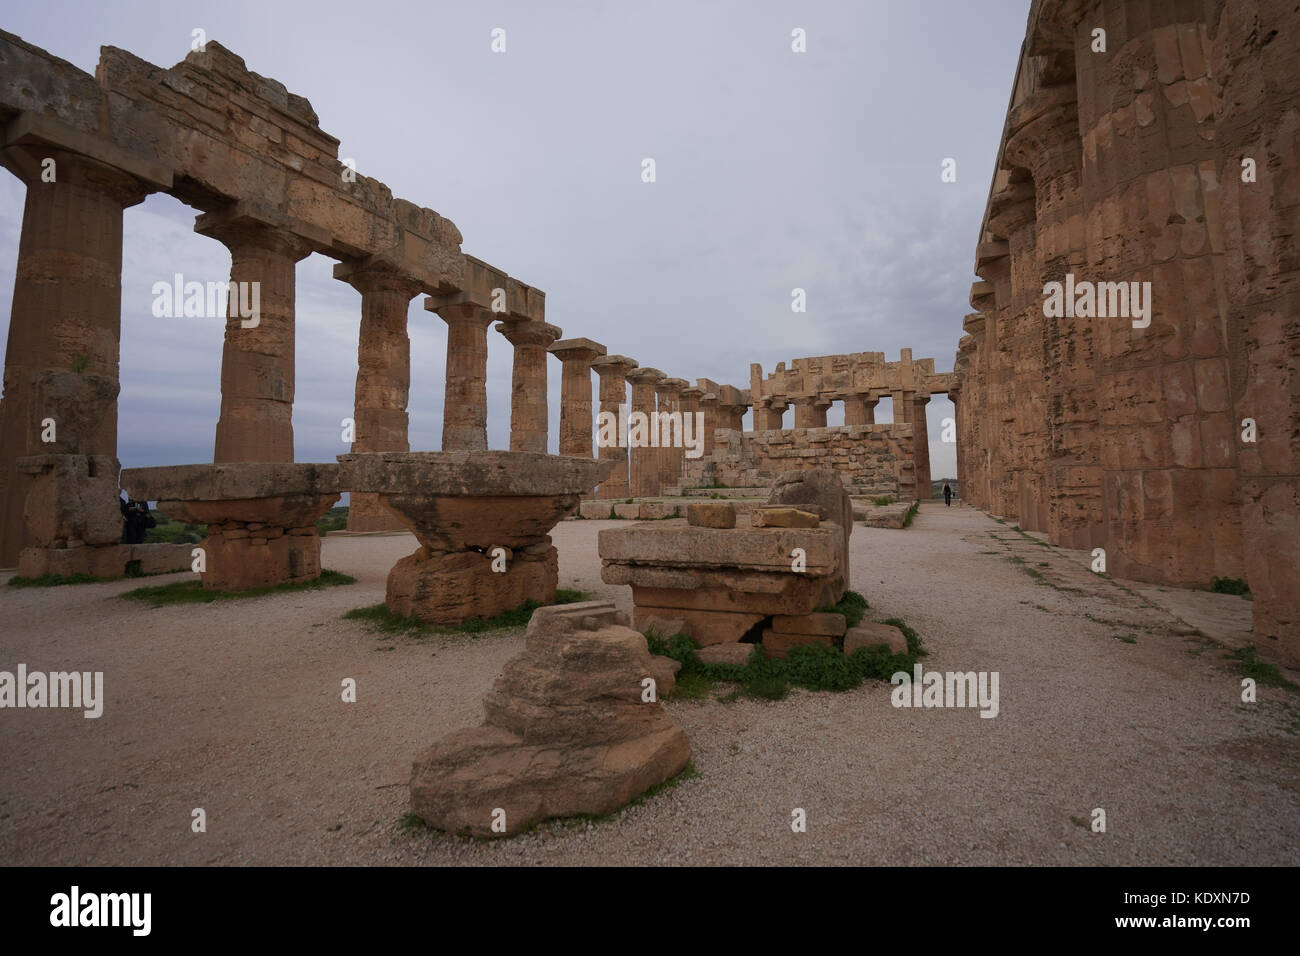 El templo de Hera (también conocido como templo griego e) en el sitio arqueológico de Selinunte. A partir de una serie de fotos de viaje en Sicilia, Italia. foto fecha: Foto de stock